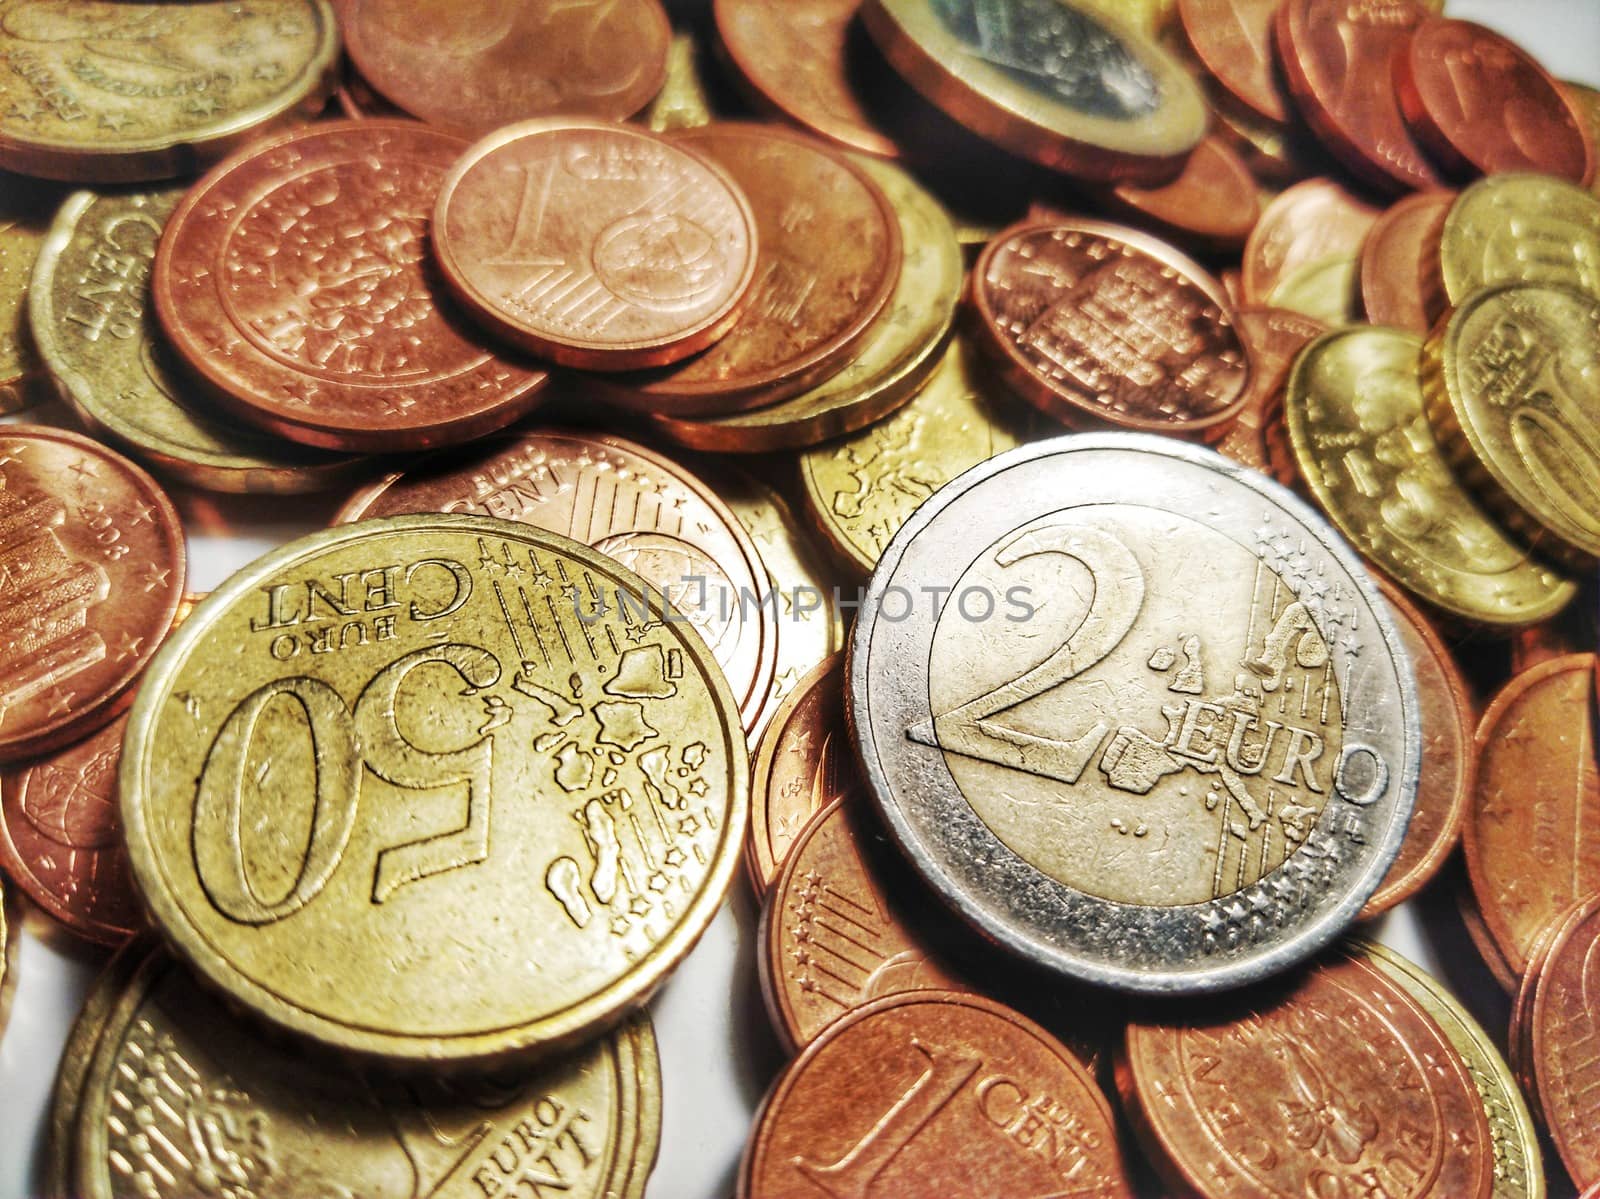 Euro coins by federica_favara